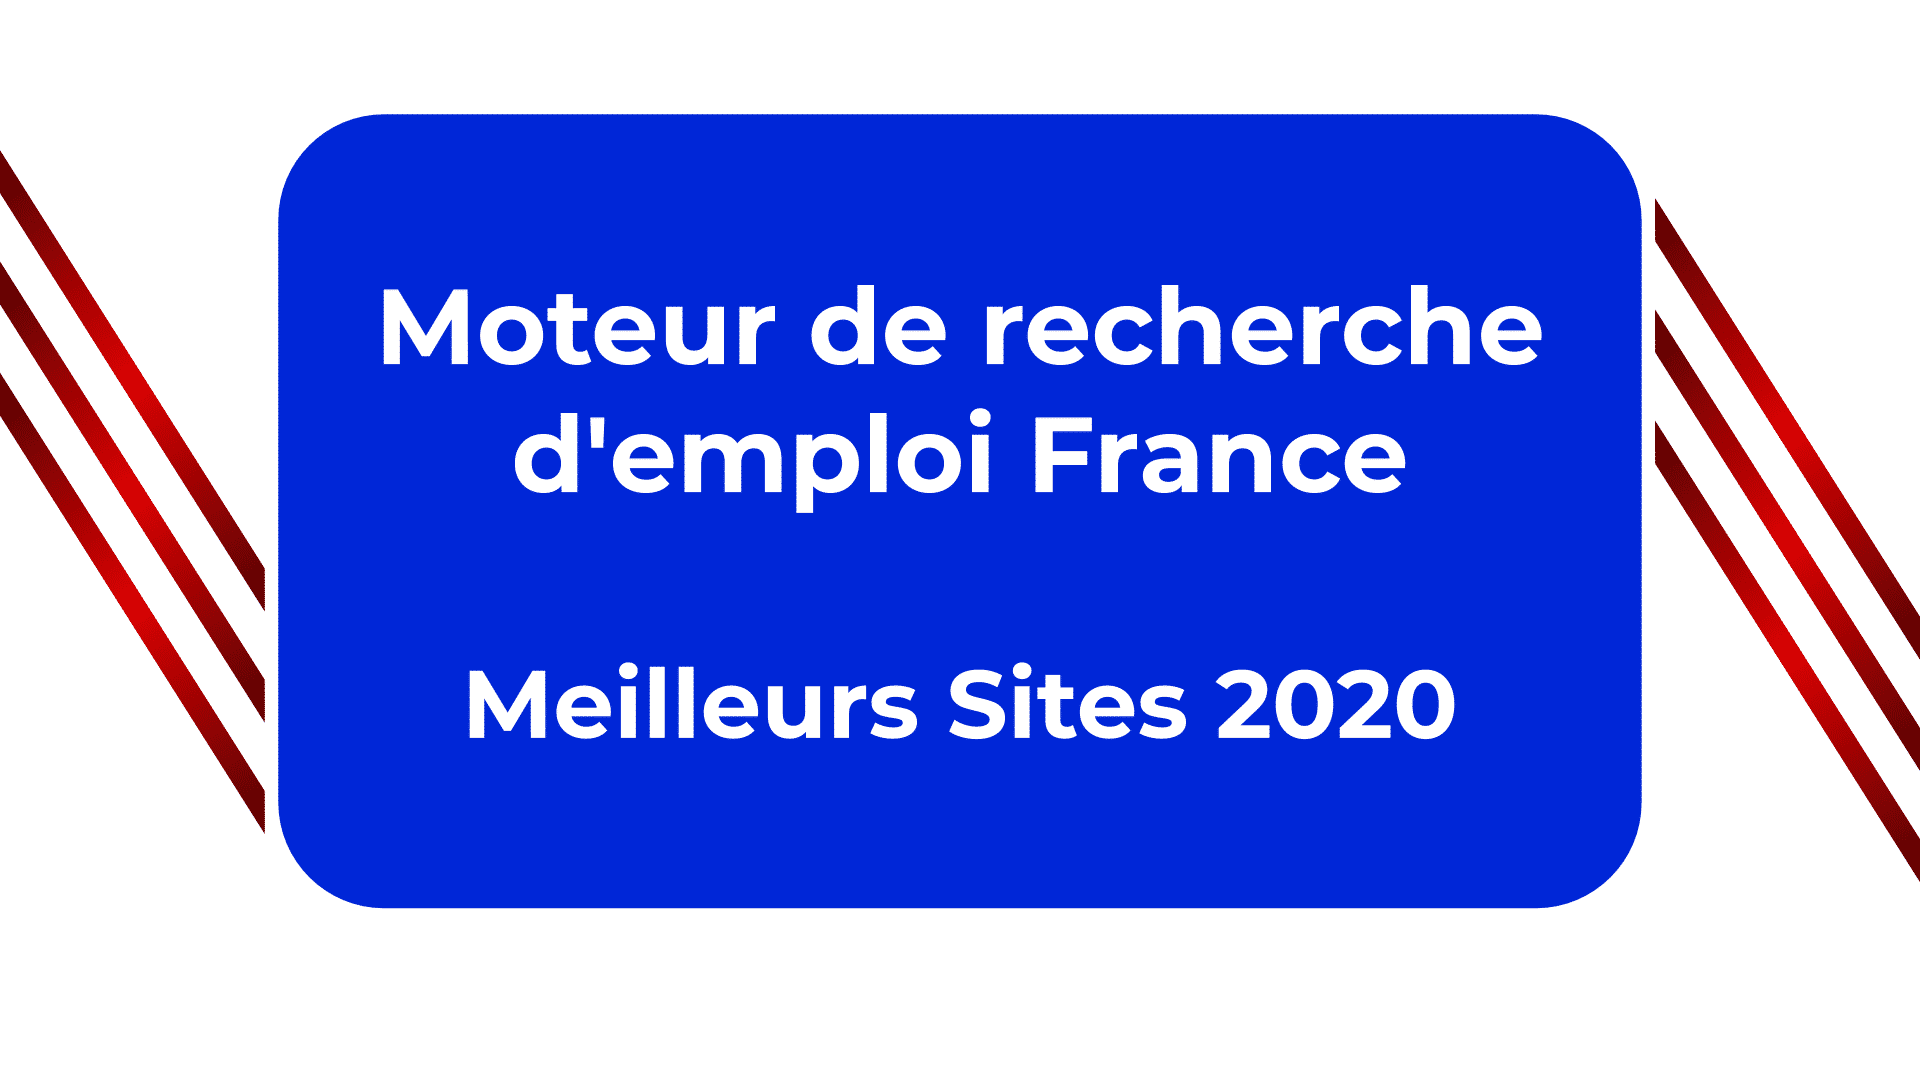 Moteur de recherche d'emploi France - Les Meilleurs Sites 2020